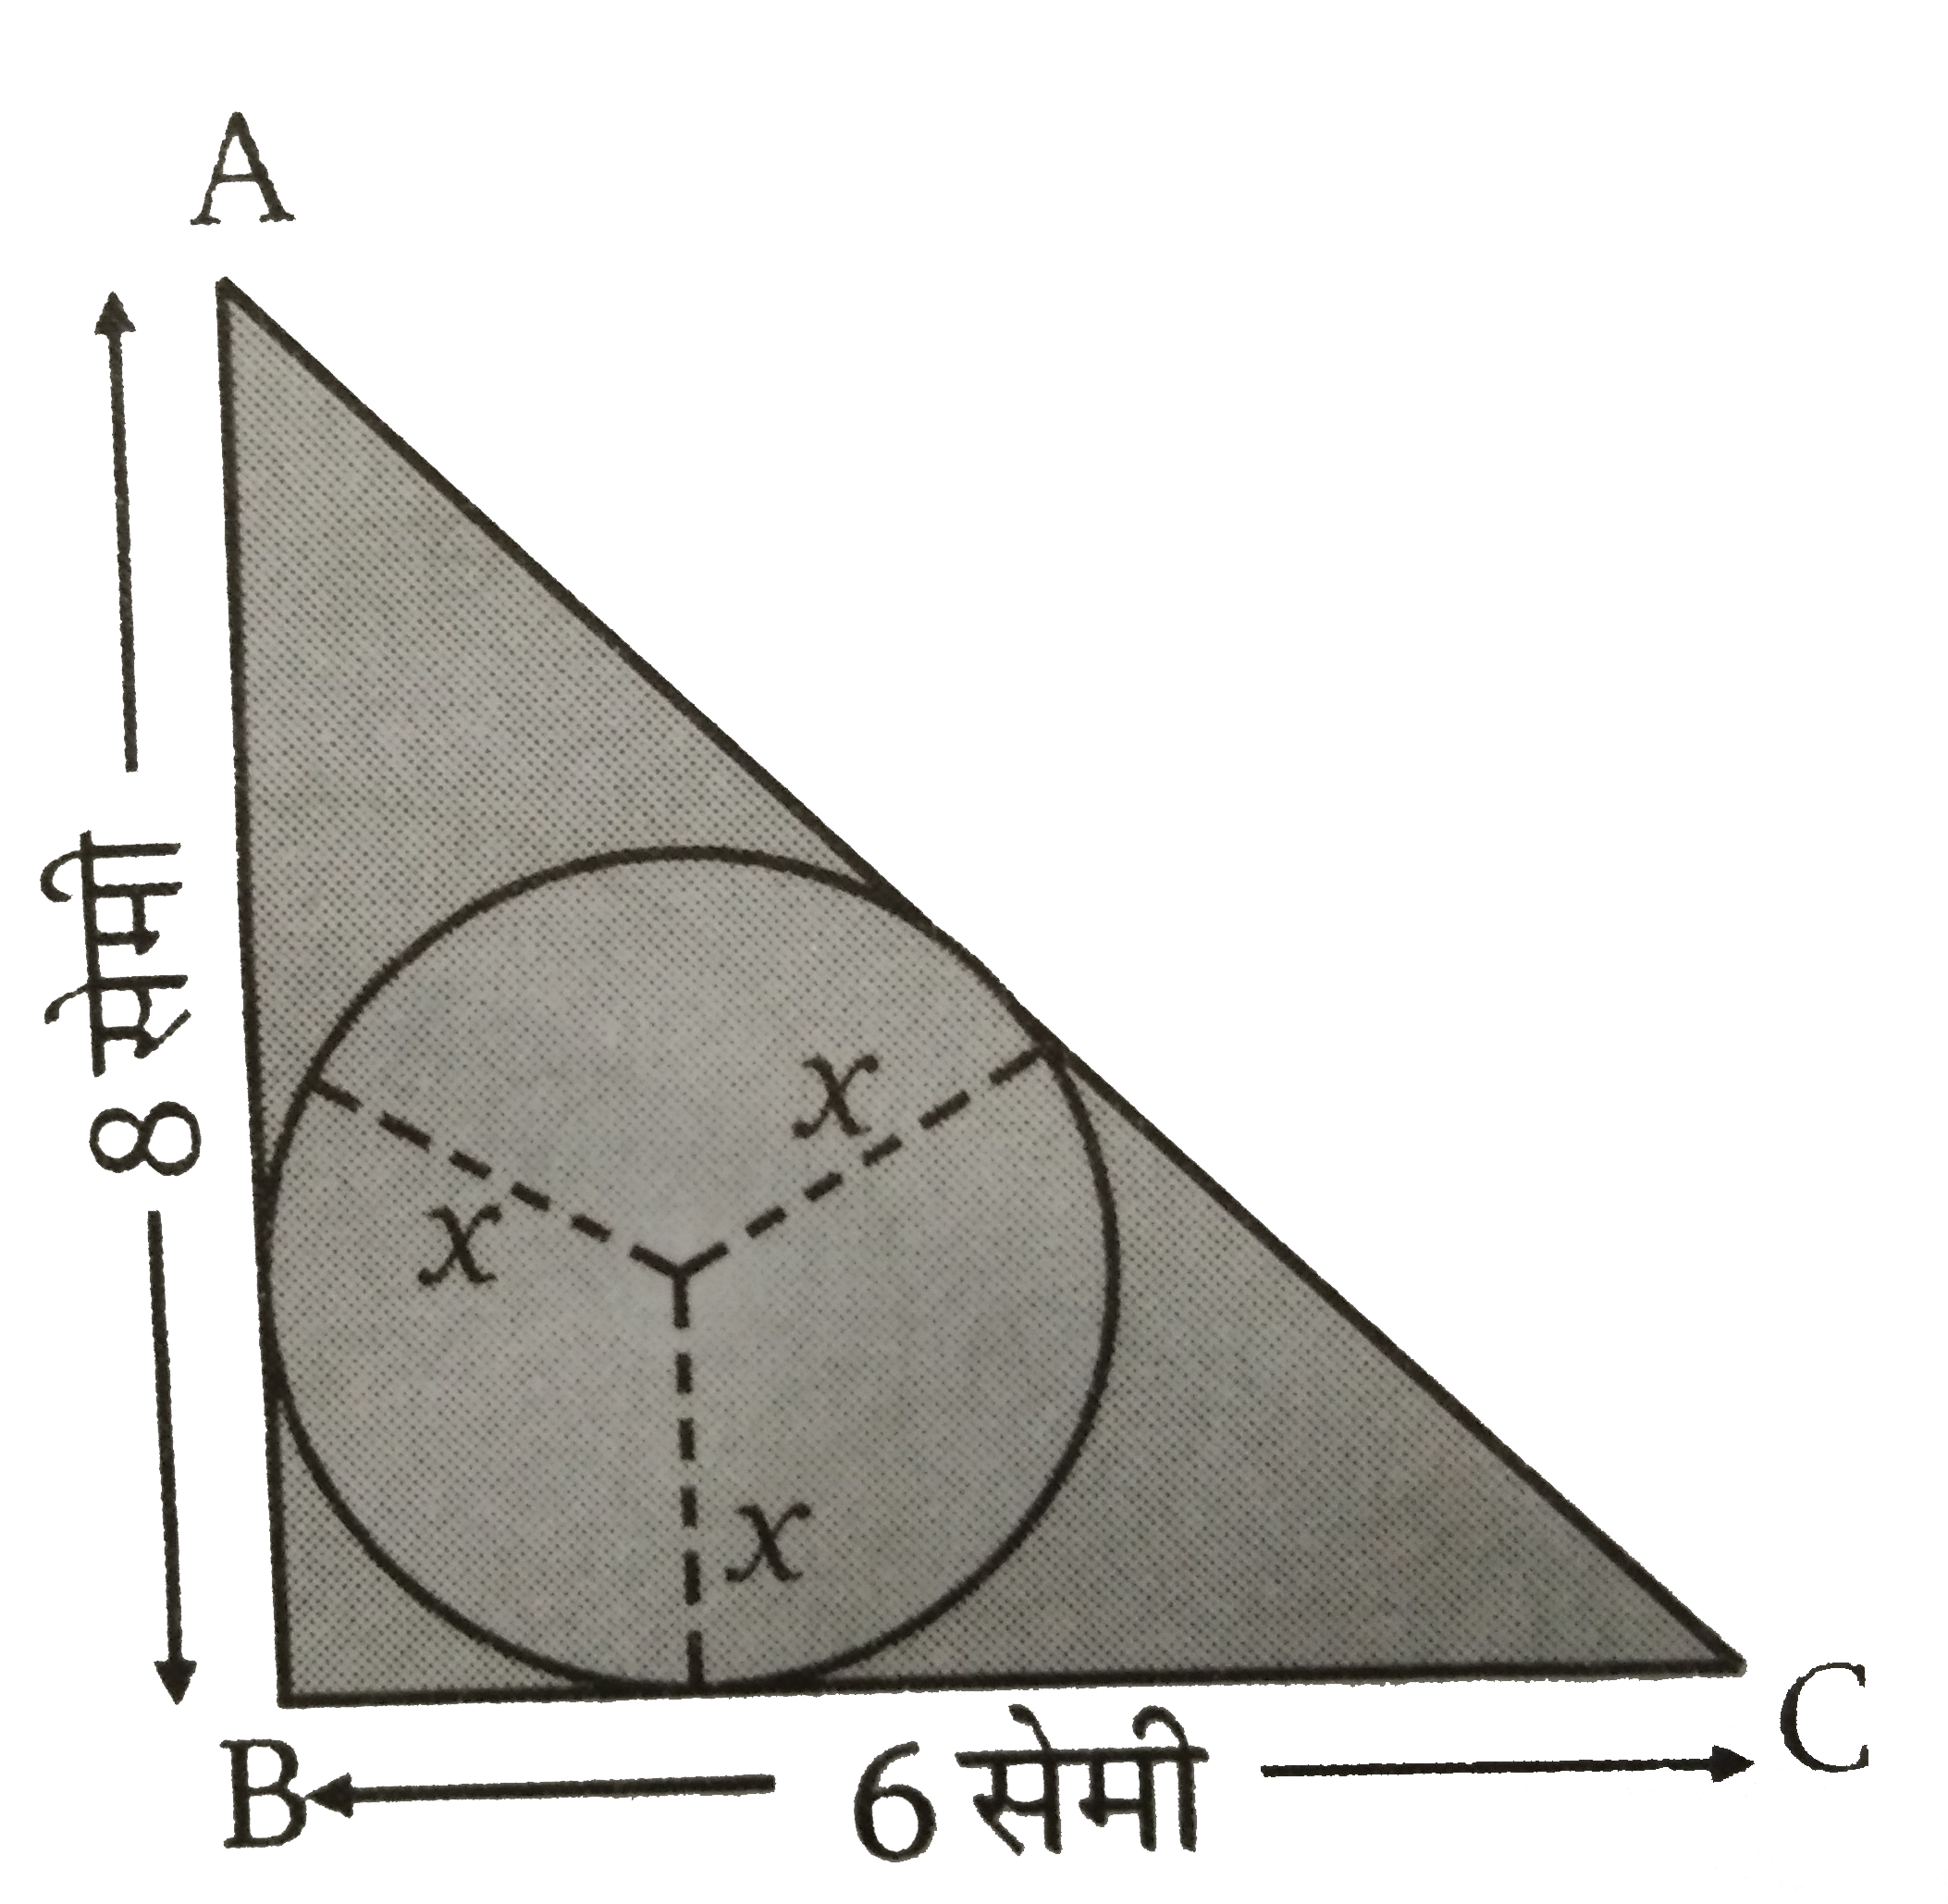 triangle ABC एक समकोण त्रिभुज है जिसमे  BC = 6 सेमी तथा AB = 8  सेमी है  triangle ABC के अन्तर्गत एक  O केन्द्र तथा  x त्रिज्या का वृत्त है। x  का मान ज्ञात कीजिए।